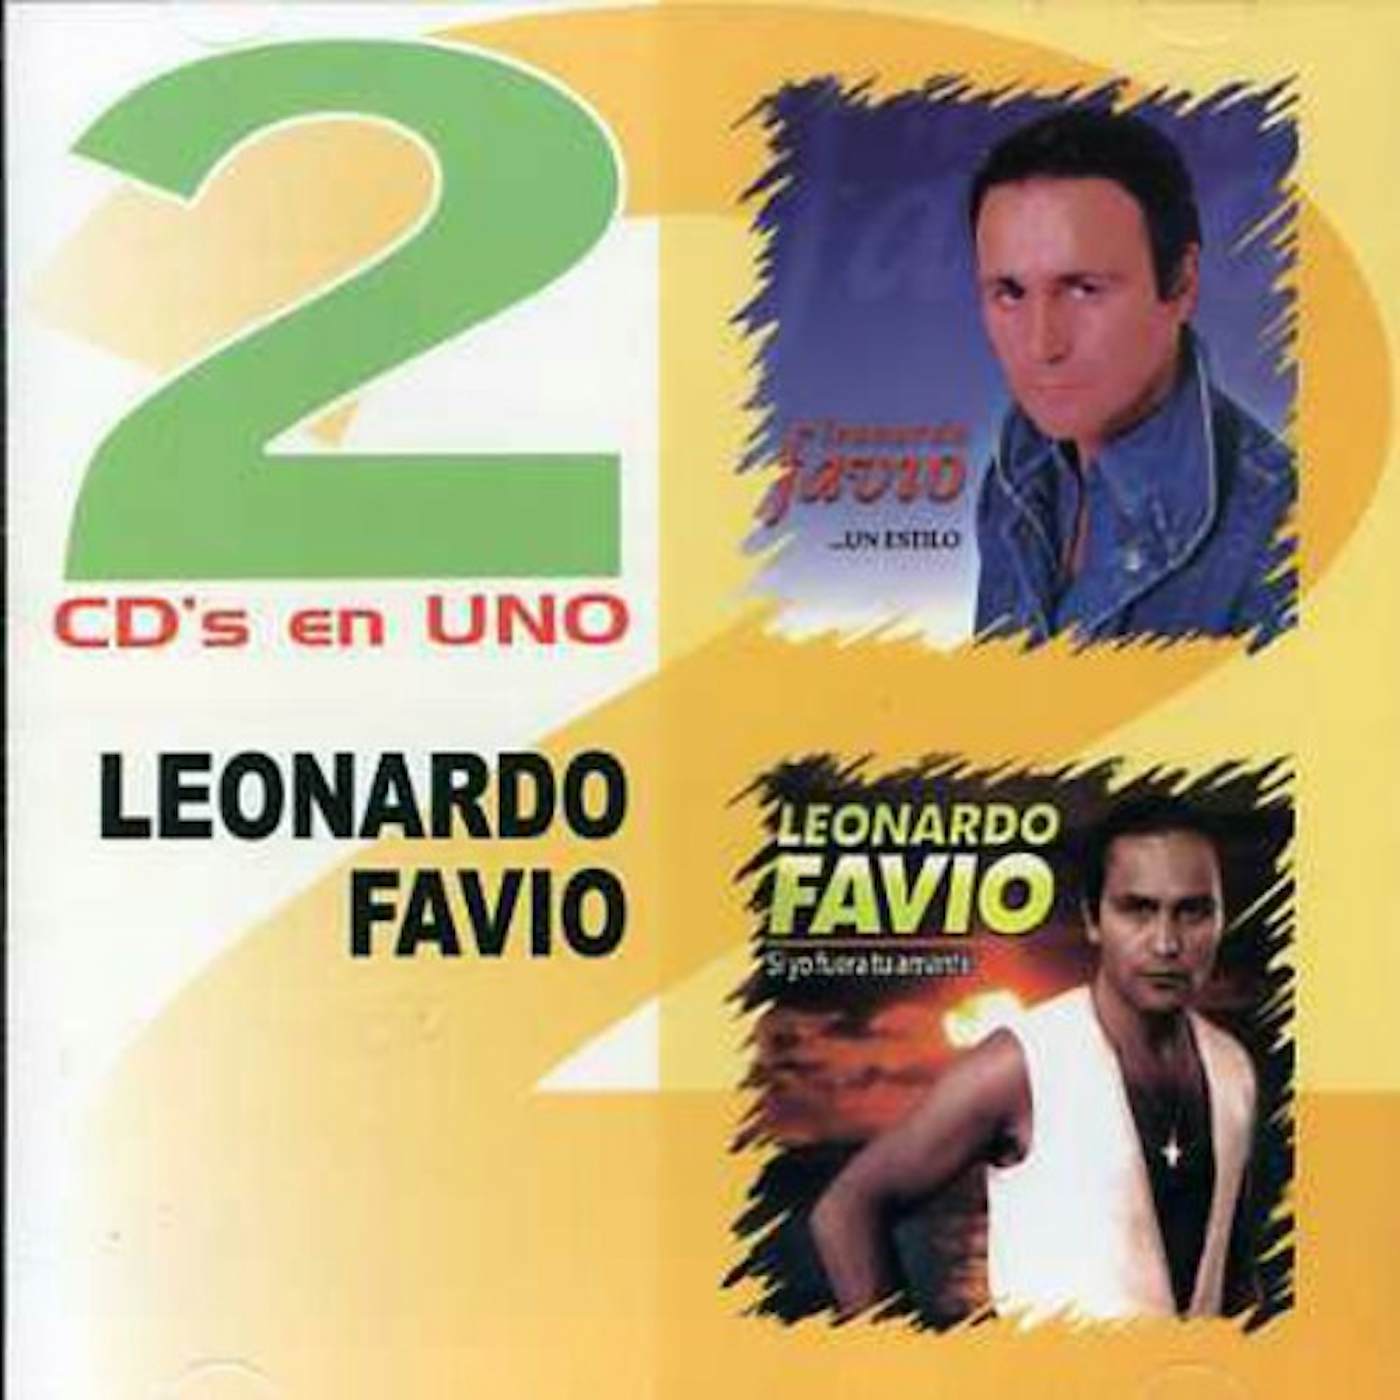 Leonardo Favio 2 EN 1 CD